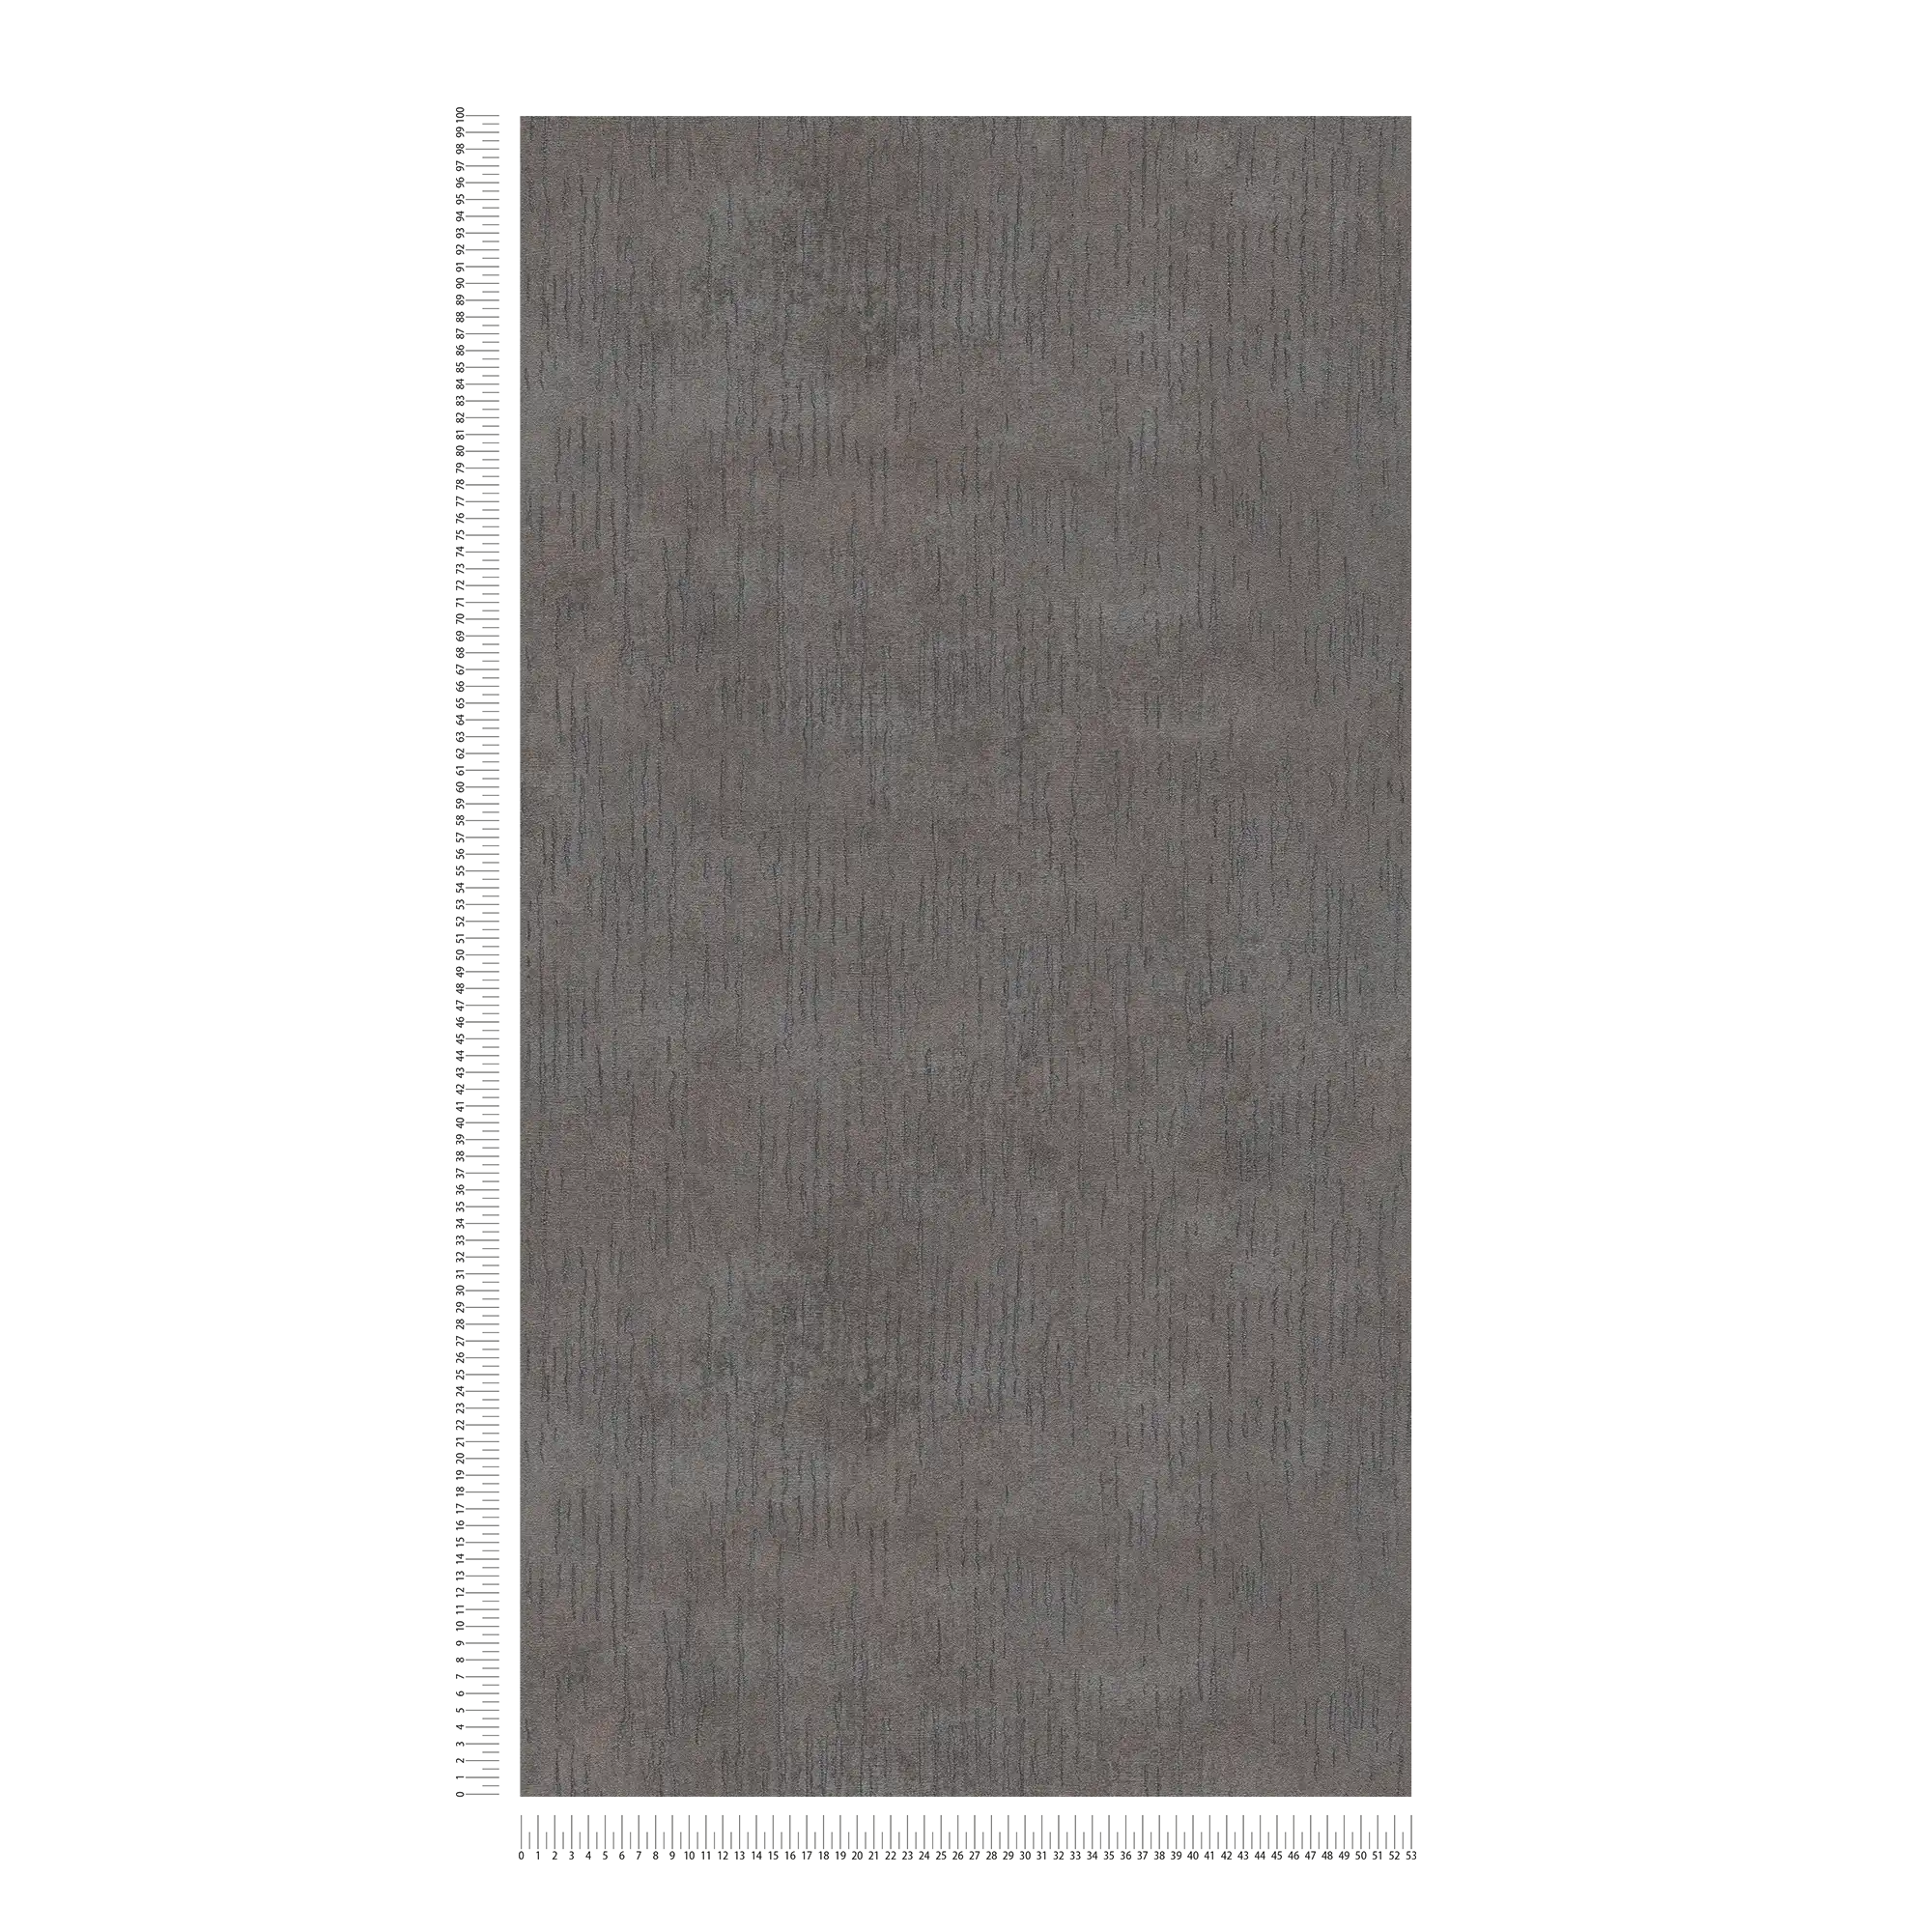             Papier peint uni anthracite avec aspect métallisé - gris, métallisé, noir
        